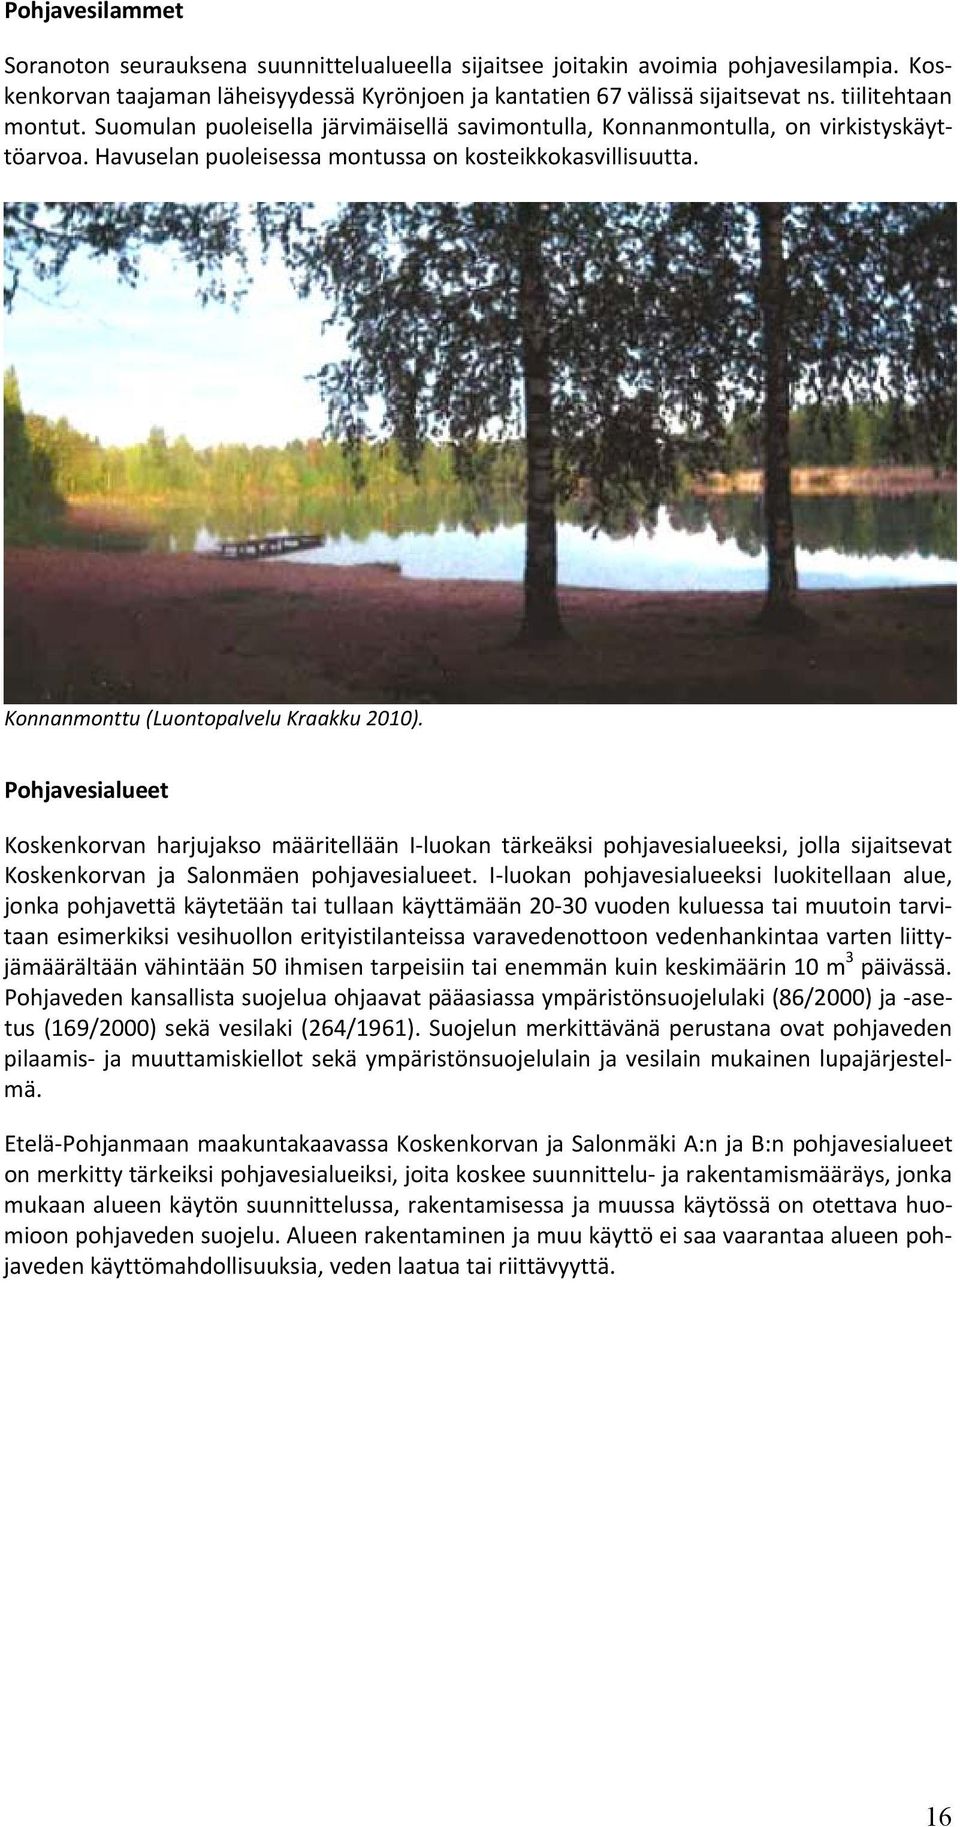 Konnanmonttu (Luontopalvelu Kraakku 2010). Pohjavesialueet Koskenkorvan harjujakso määritellään I luokan tärkeäksi pohjavesialueeksi, jolla sijaitsevat Koskenkorvan ja Salonmäen pohjavesialueet.